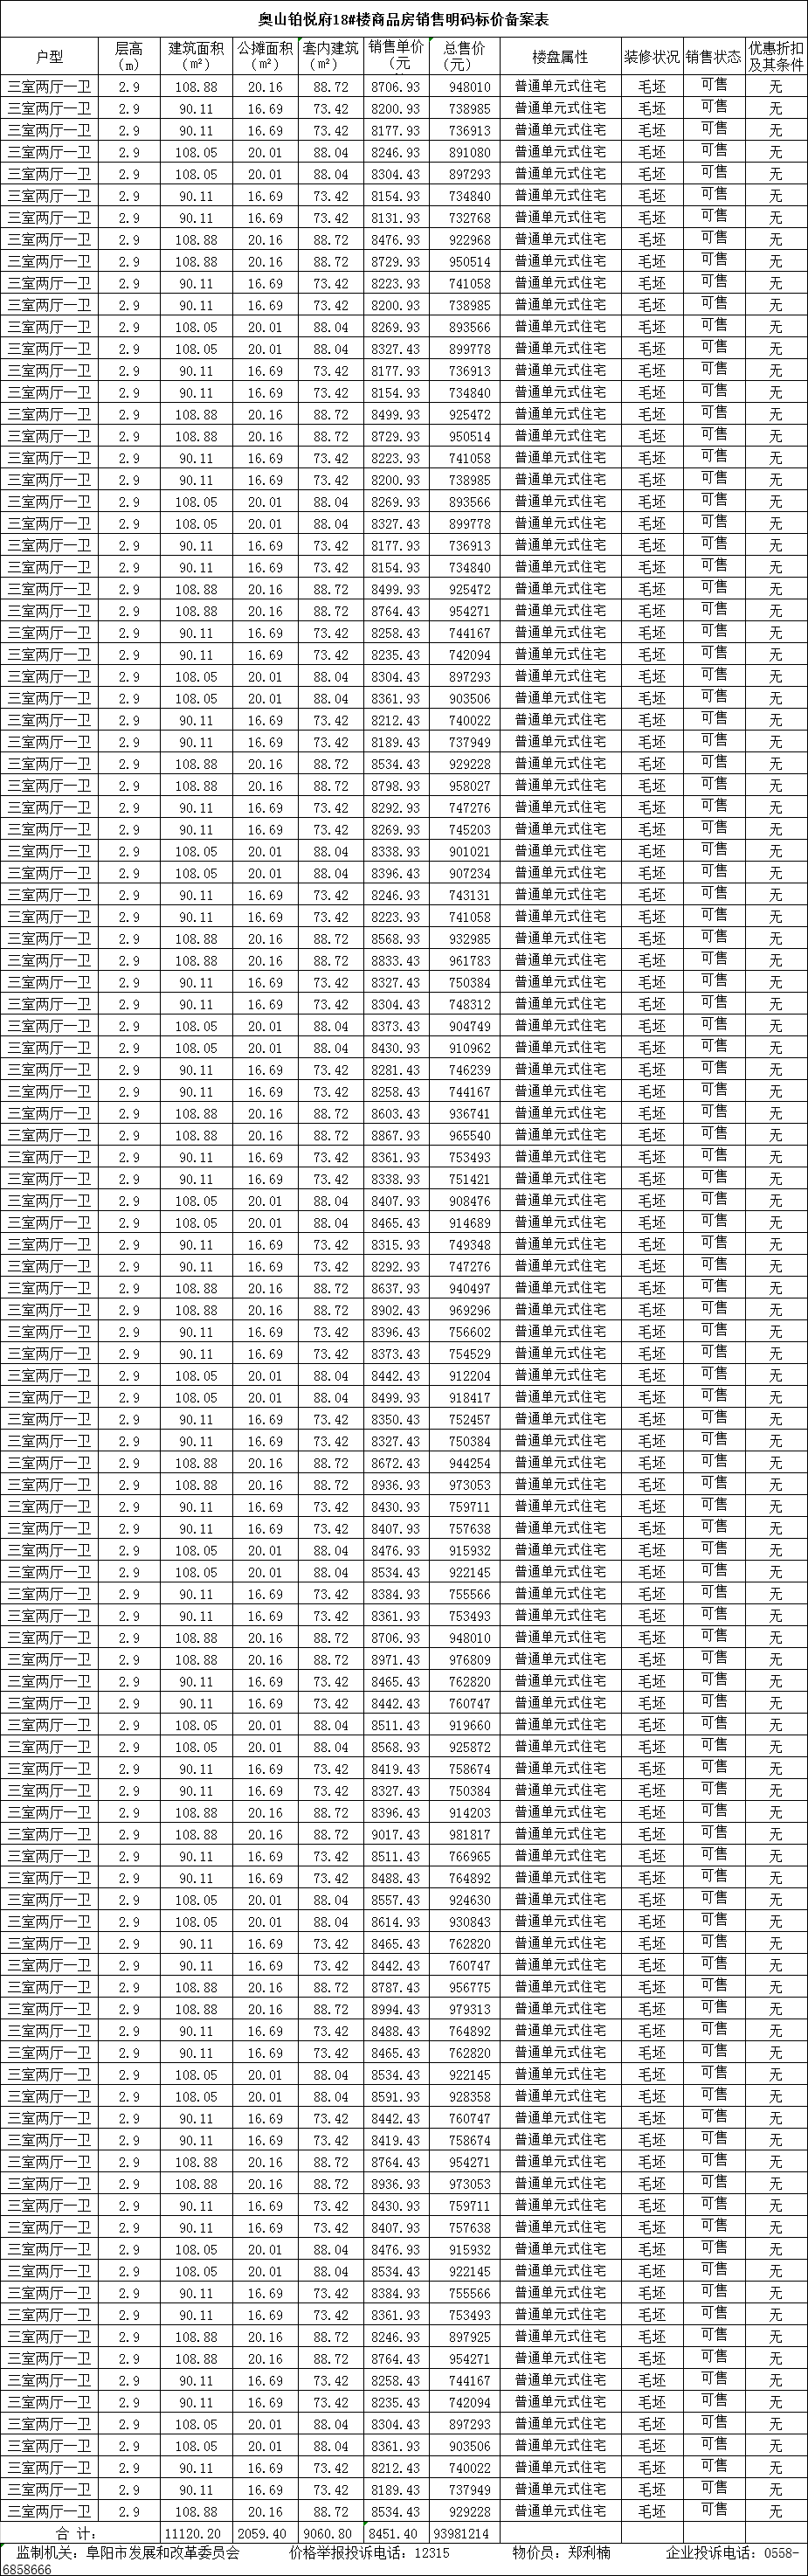 奥山·铂悦府共备案住宅261套，备案均价约为8467.47元/㎡